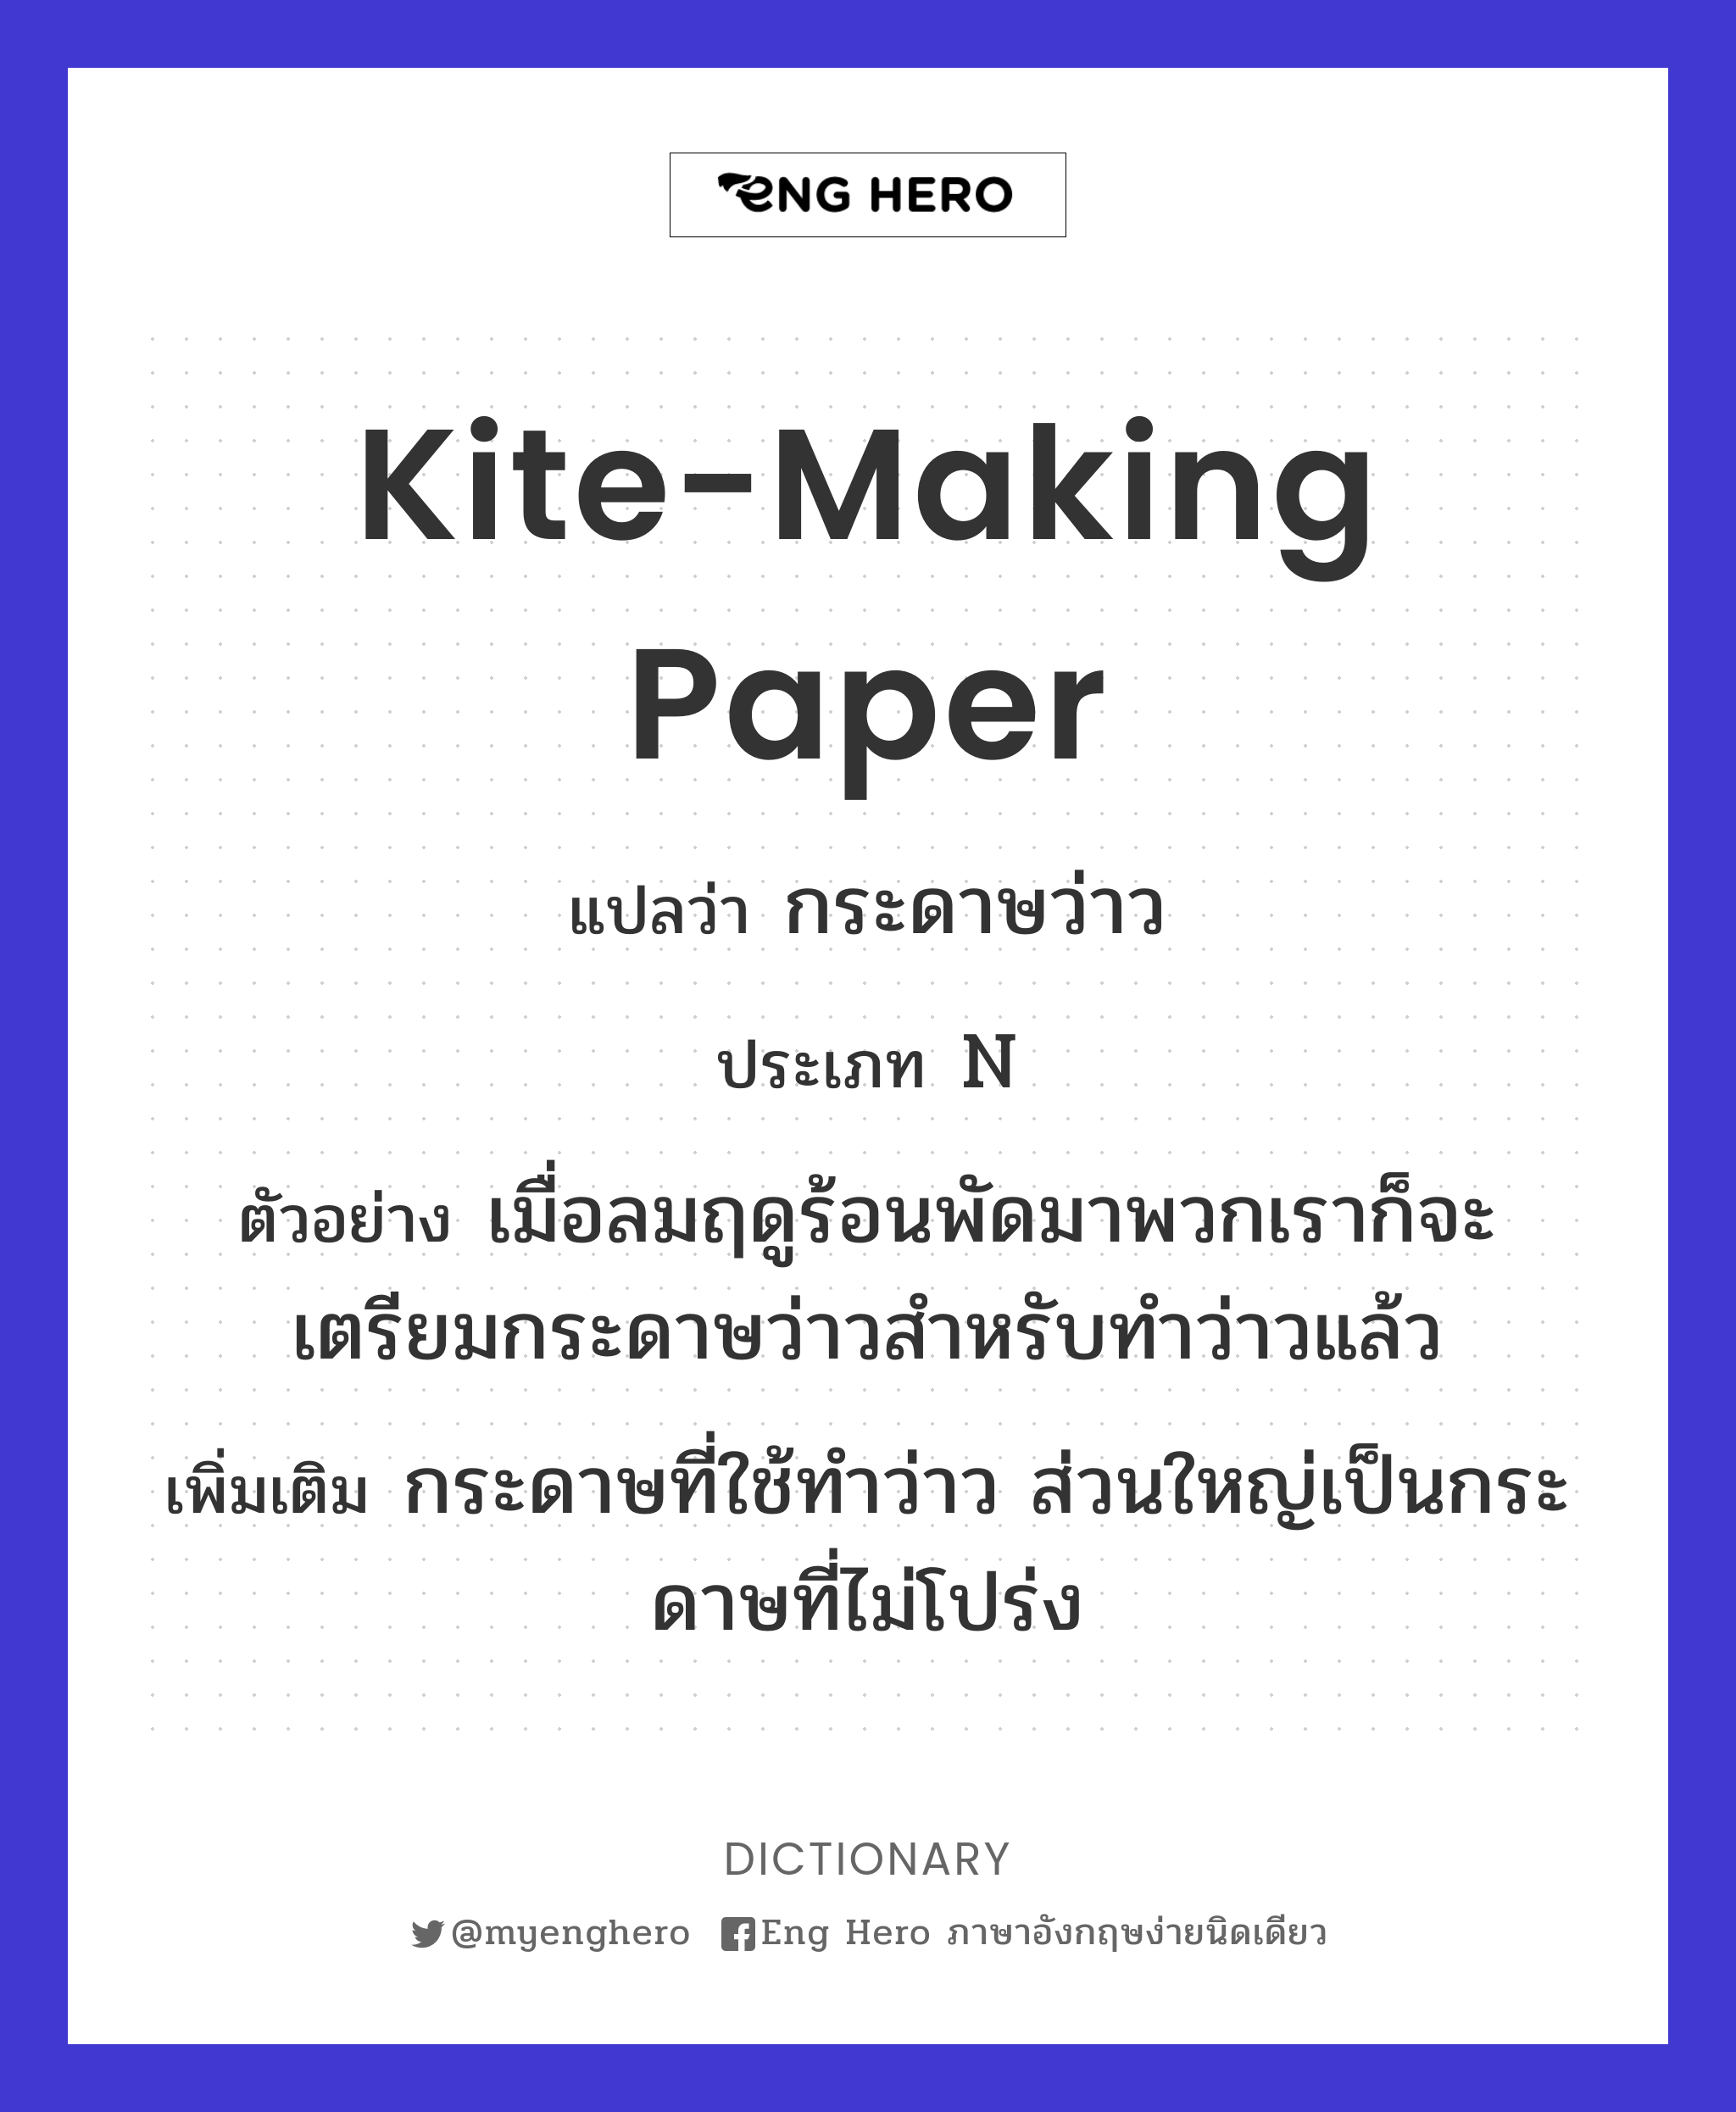 kite-making paper